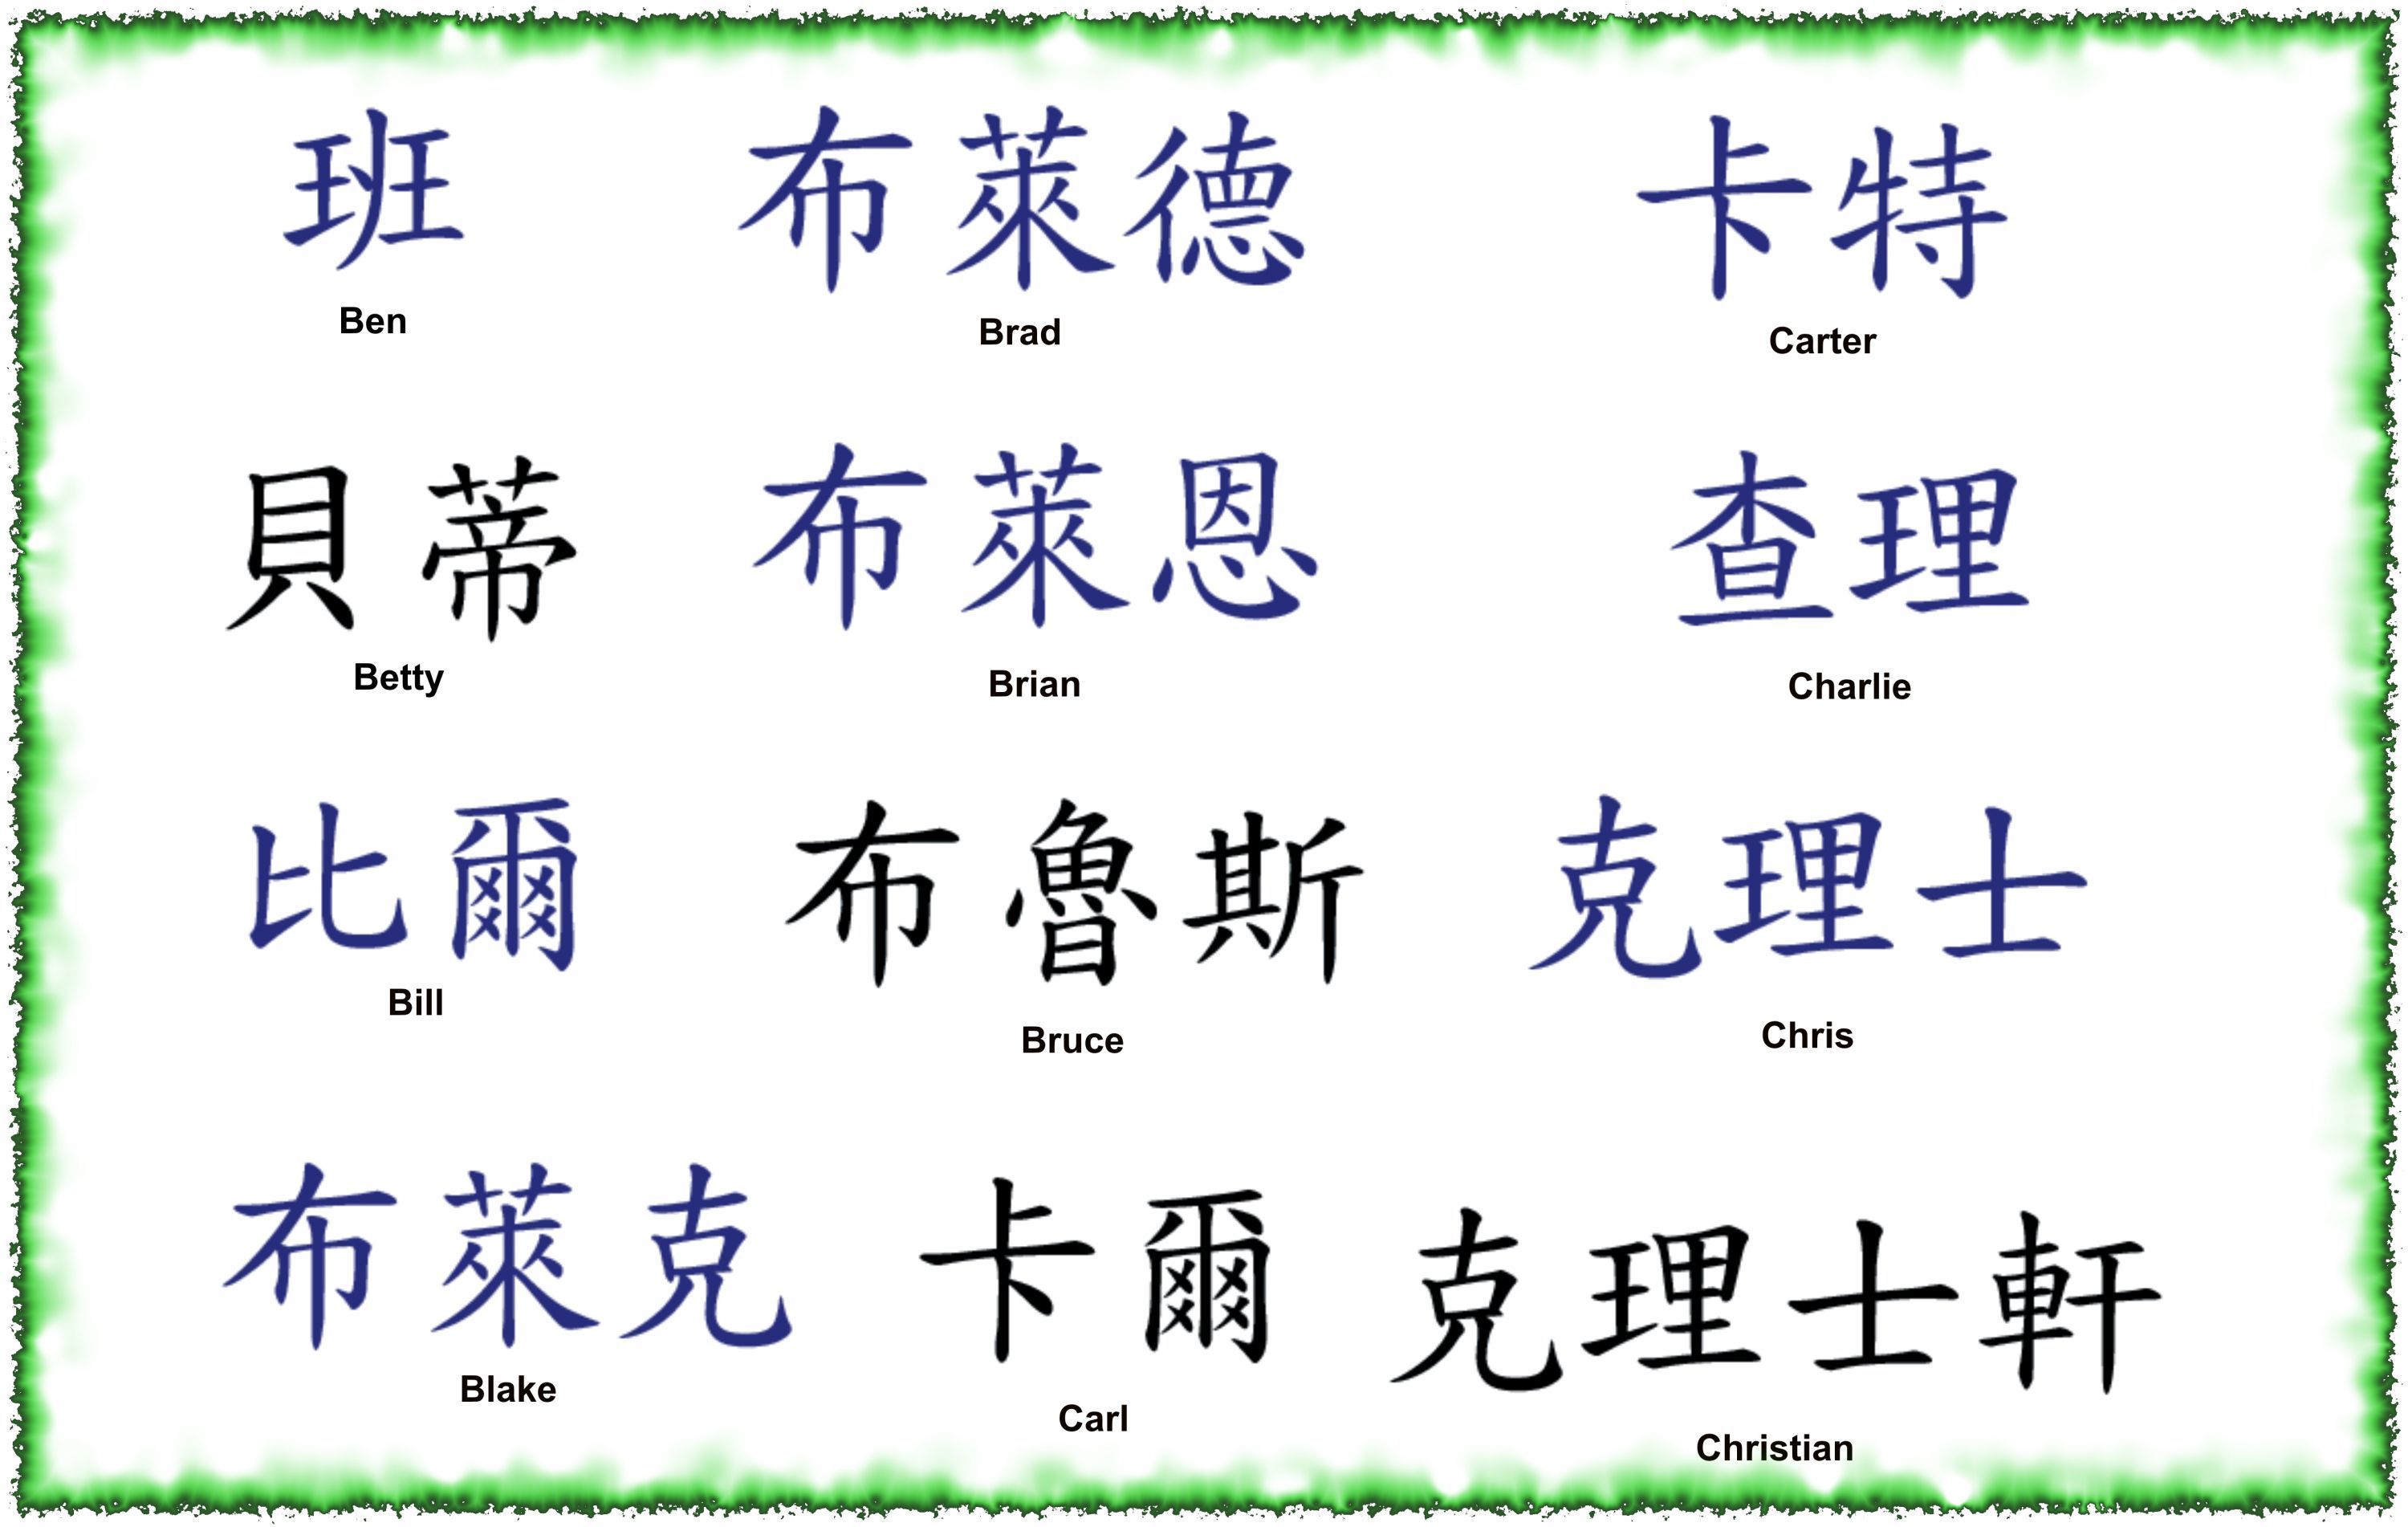 How to write kanji names